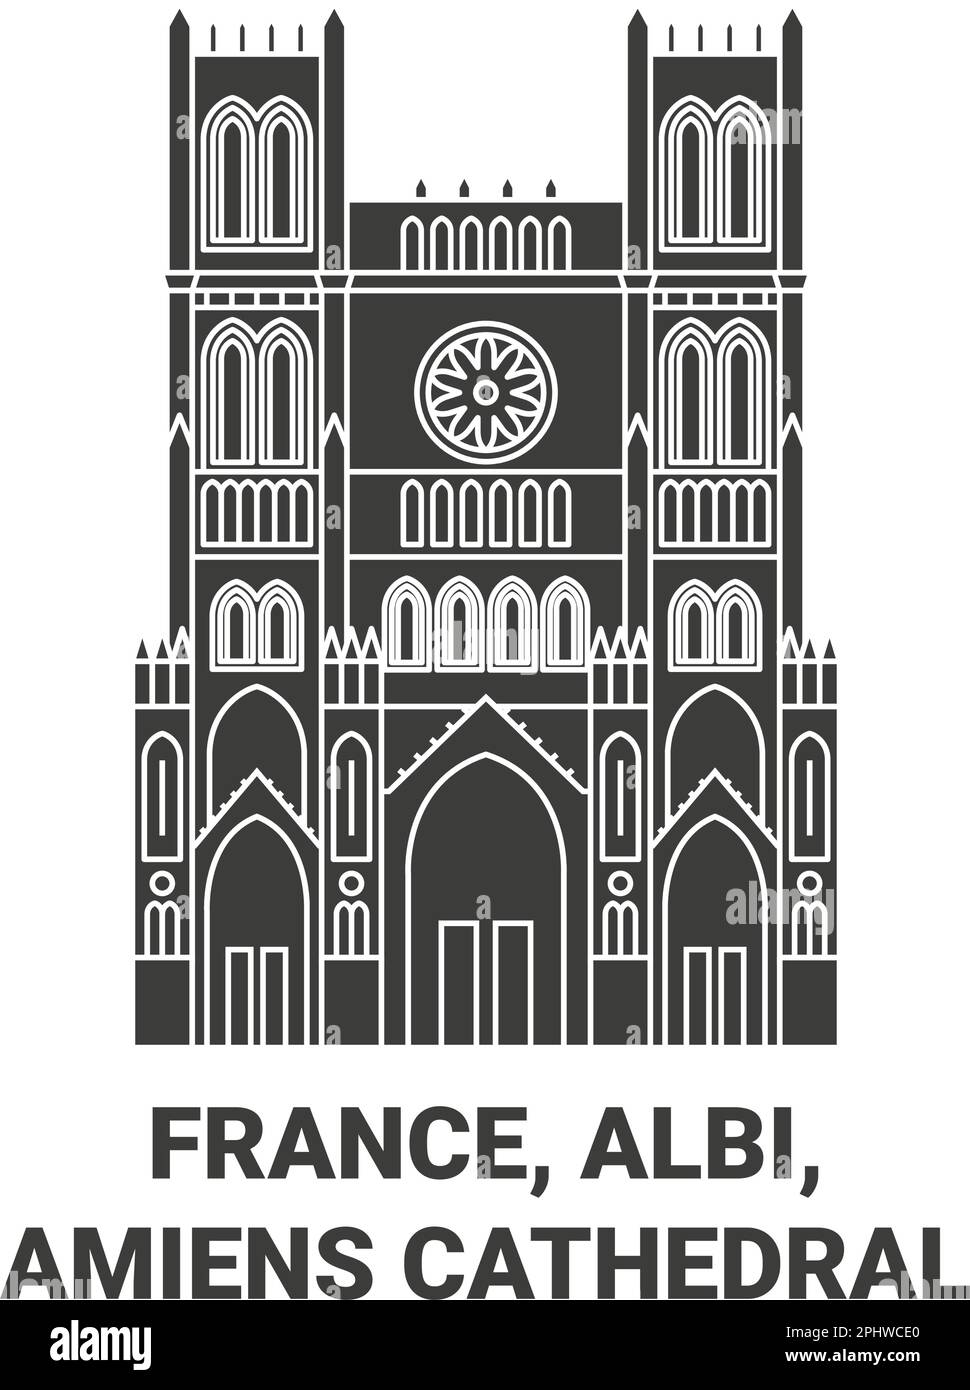 France, Albi, cathédrale d'Amiens Voyage repère illustration vecteur Illustration de Vecteur